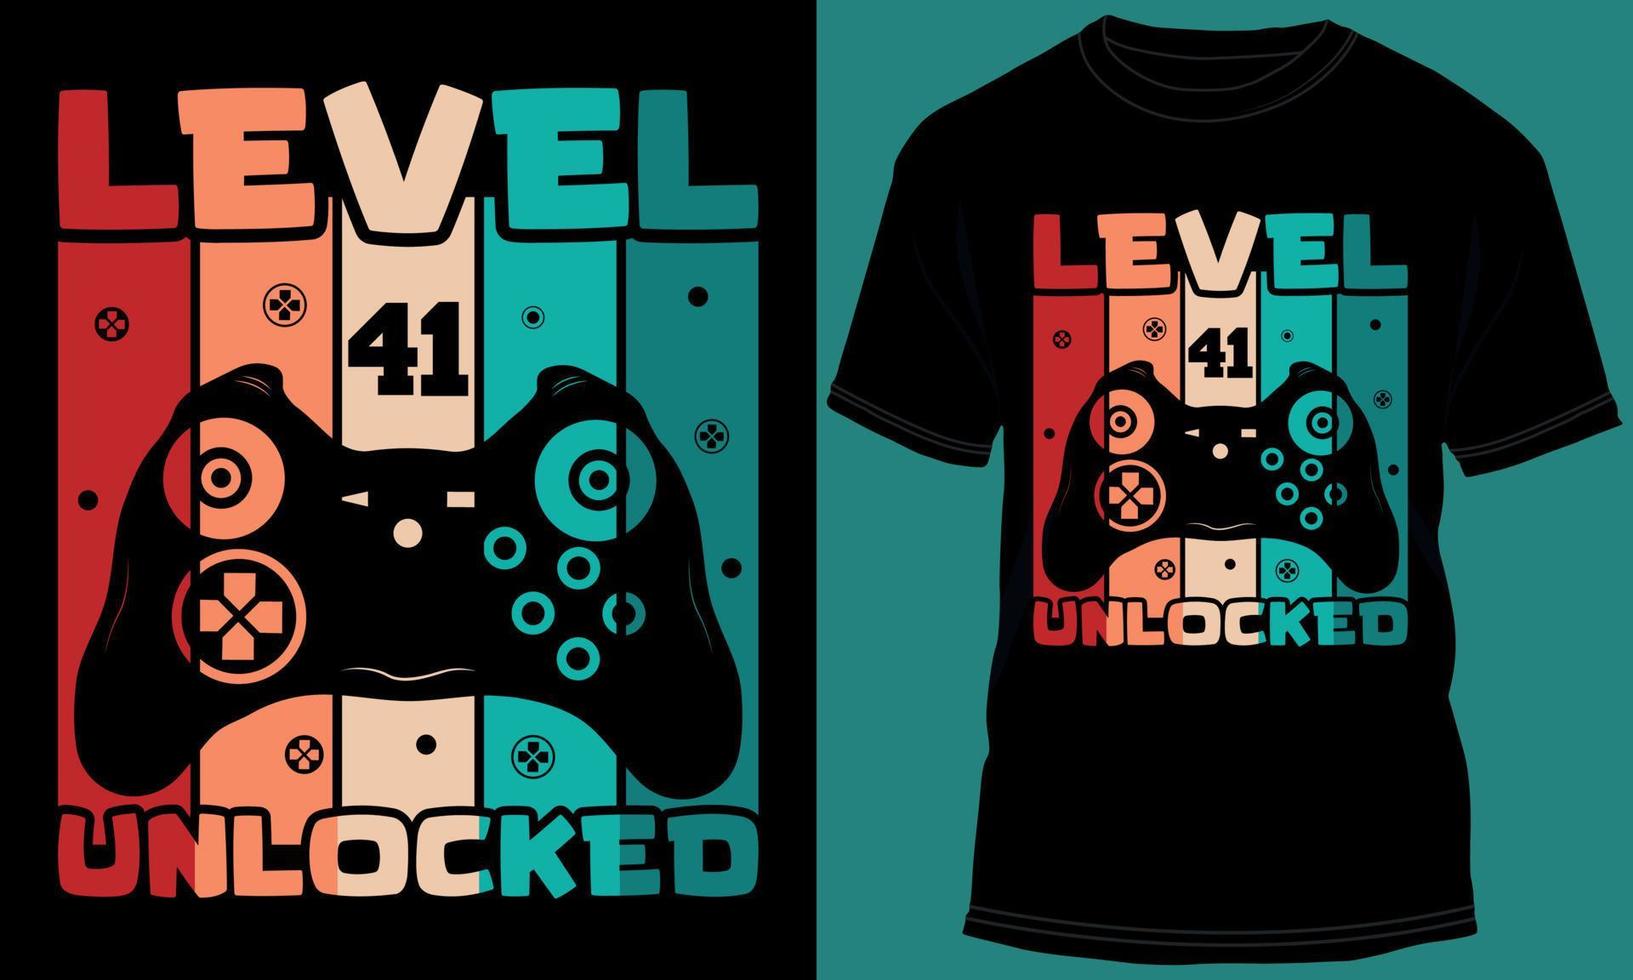 gamer eller gaming nivå 41 olåst tshirt design vektor